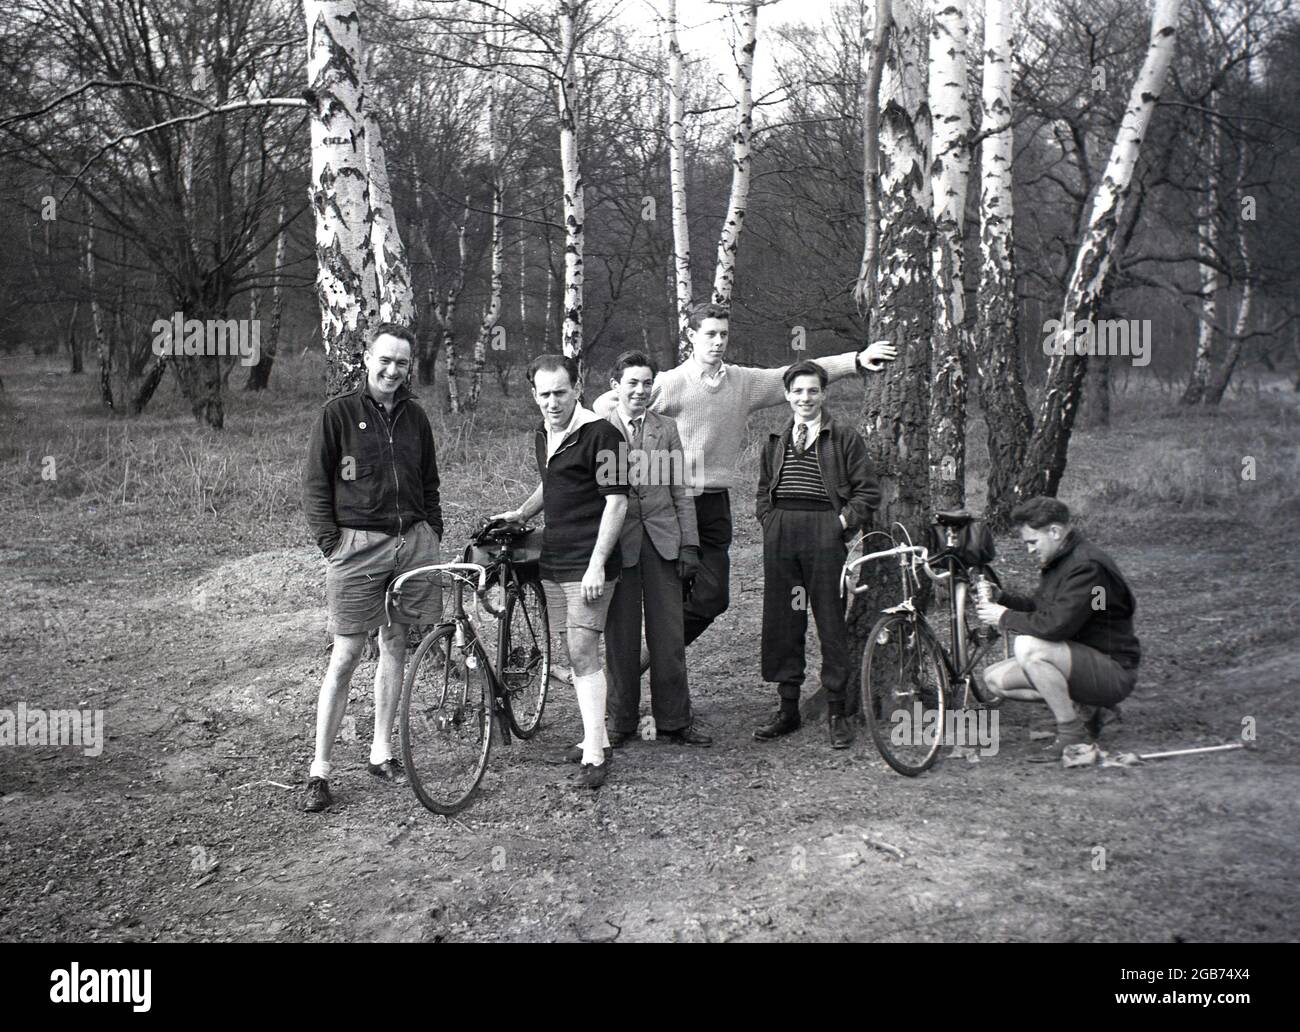 1954, membri storici e maschili di un club ciclistico in piedi per una foto in una zona boscosa illuminata di Epping Forest, Loughton, Essex, Inghilterra, Regno Unito. Foto Stock